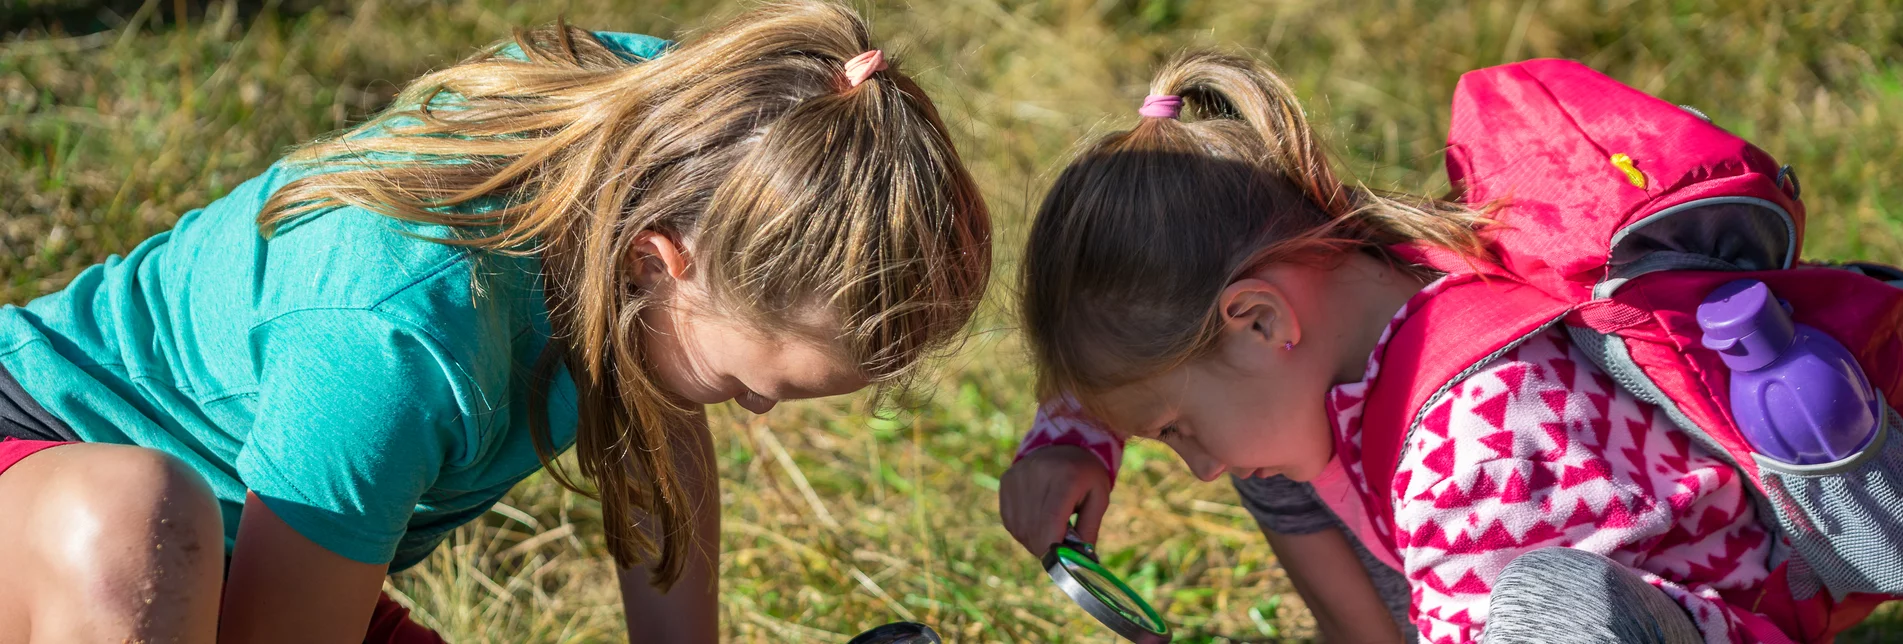 Naturpark-Forscher - zwei Mädchen mit Lupe in der Wiese | © TVB Naturpark Zirbitzkogel-Grebenzen